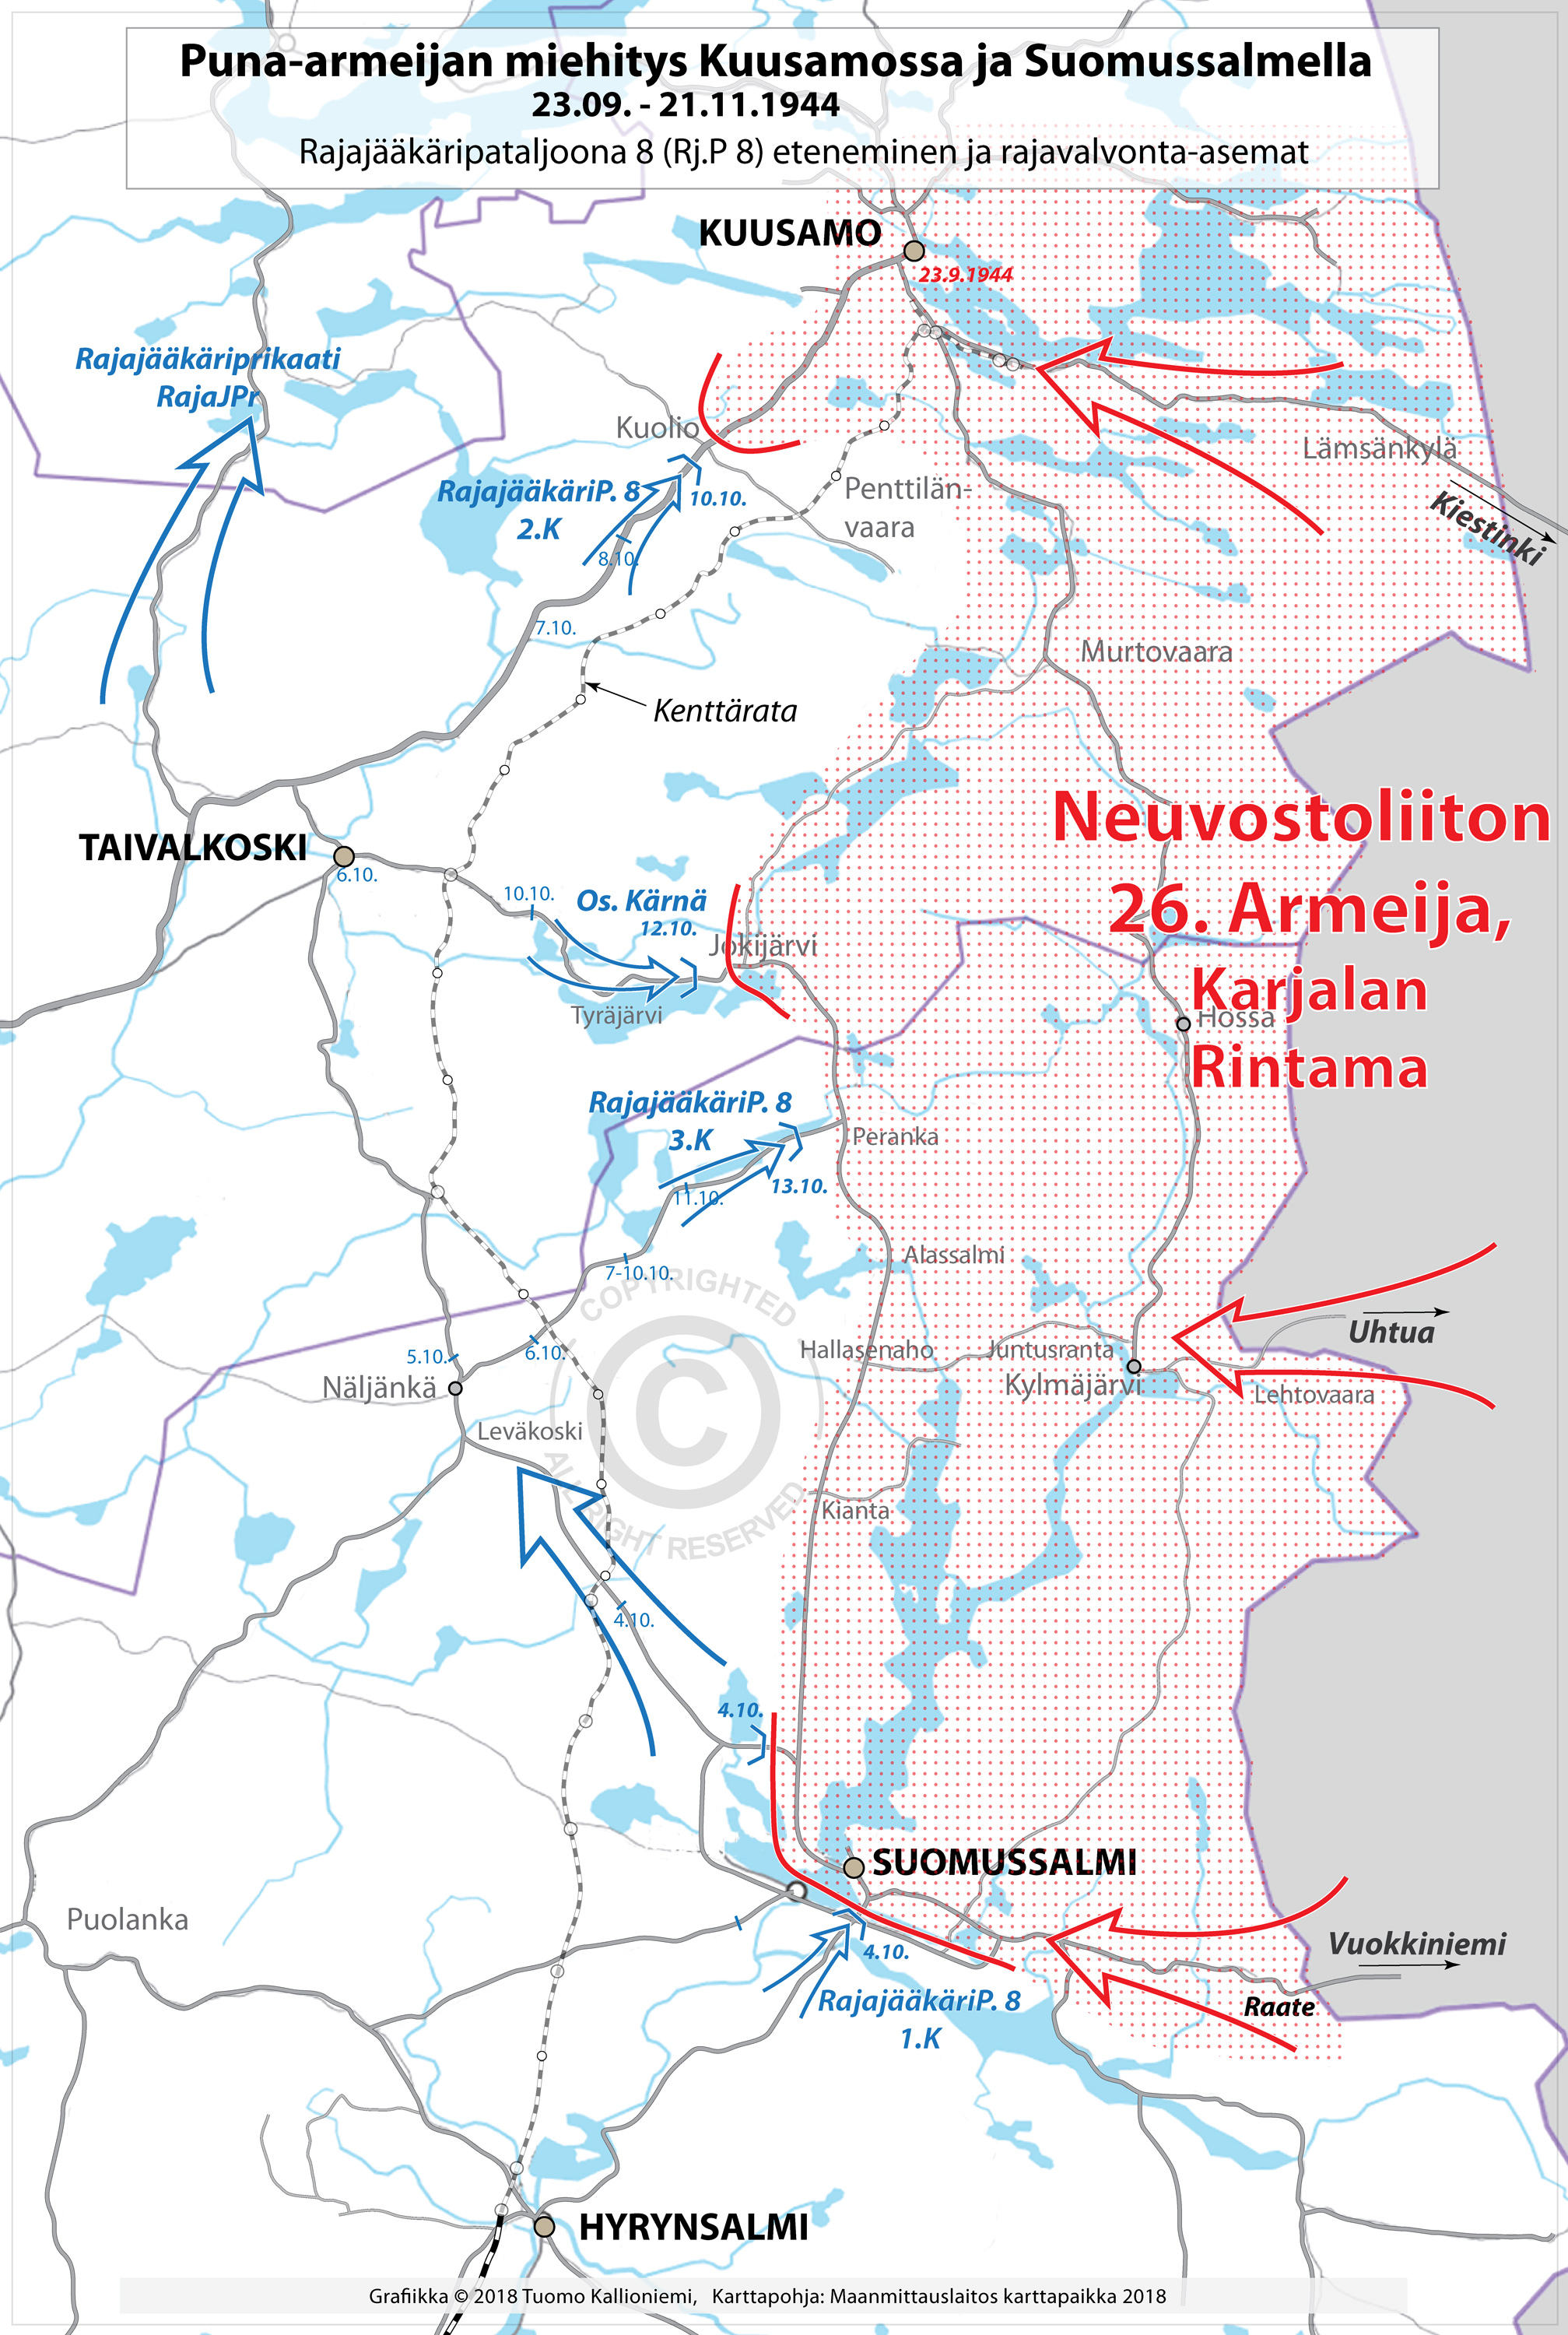 Neuvostoliiton miehitys Kuusamossa ja Suomussalmella - SUOMI 1944-1945